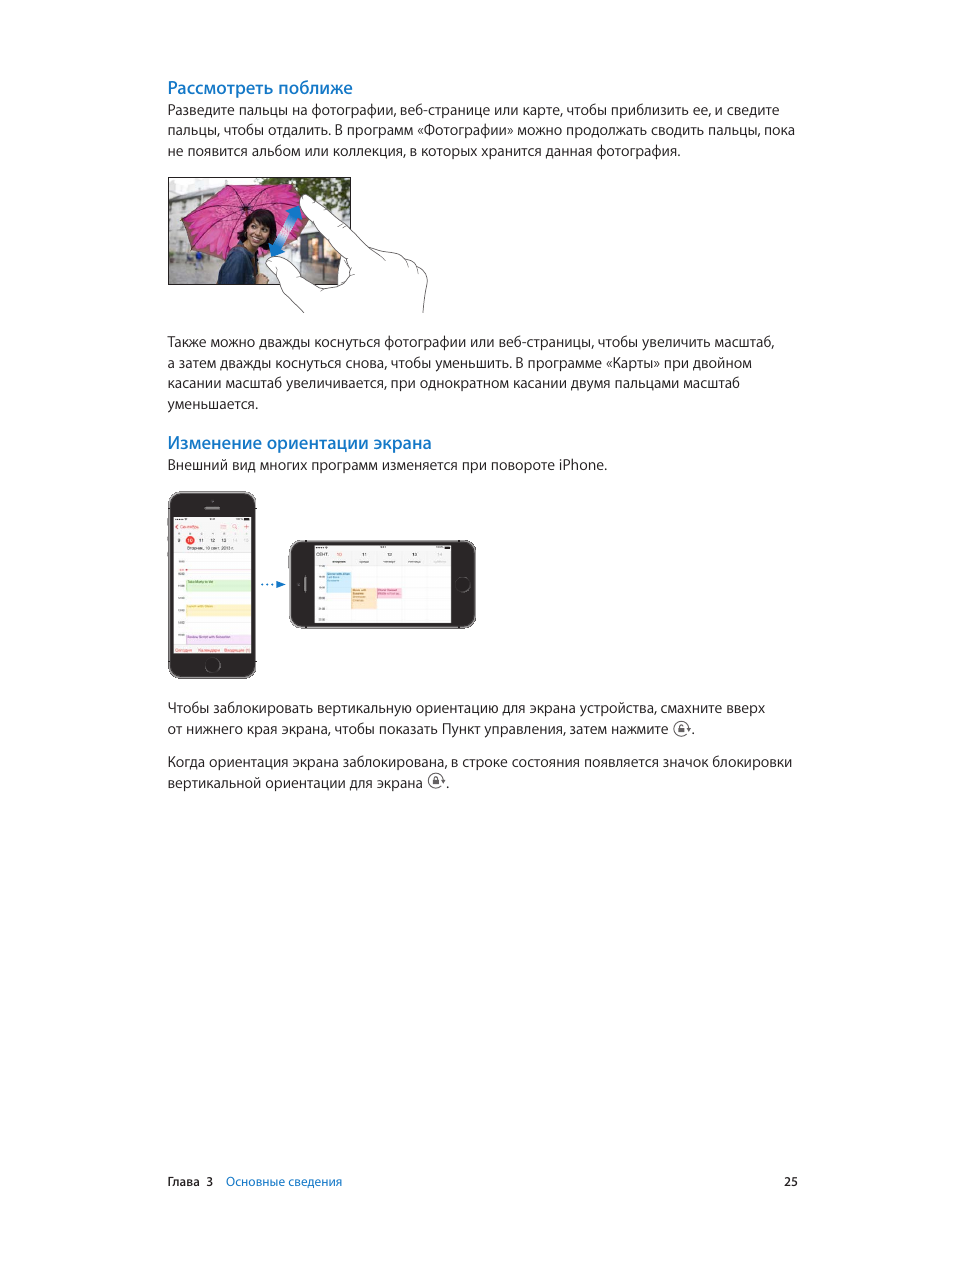 Изменение ориентации, Экрана, Рассмотреть поближе | Изменение ориентации экрана | Инструкция по эксплуатации Apple iPhone iOS 7.1 | Страница 25 / 186